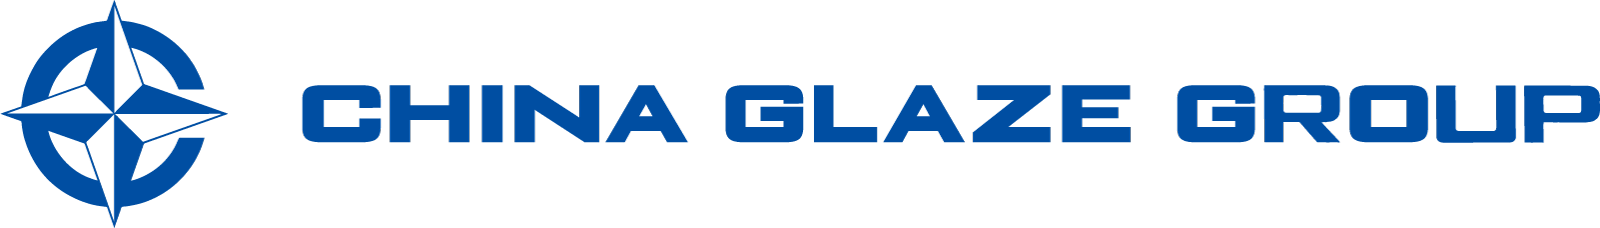 企業情報ページ。China Glaze Co., Ltd（和名：チャイナグレーズ株式会社）は台湾で最初のセラミックスフリット釉薬メーカーとして1974年に設立。ガラス粉末やガラスパウダーやセラミックスフリット釉薬を製造する台湾本社のChina Glaze Co., Ltd.（和名：チャイナグレーズ株式会社）は台湾株式市場一部に上場（企業番号1809）しています。